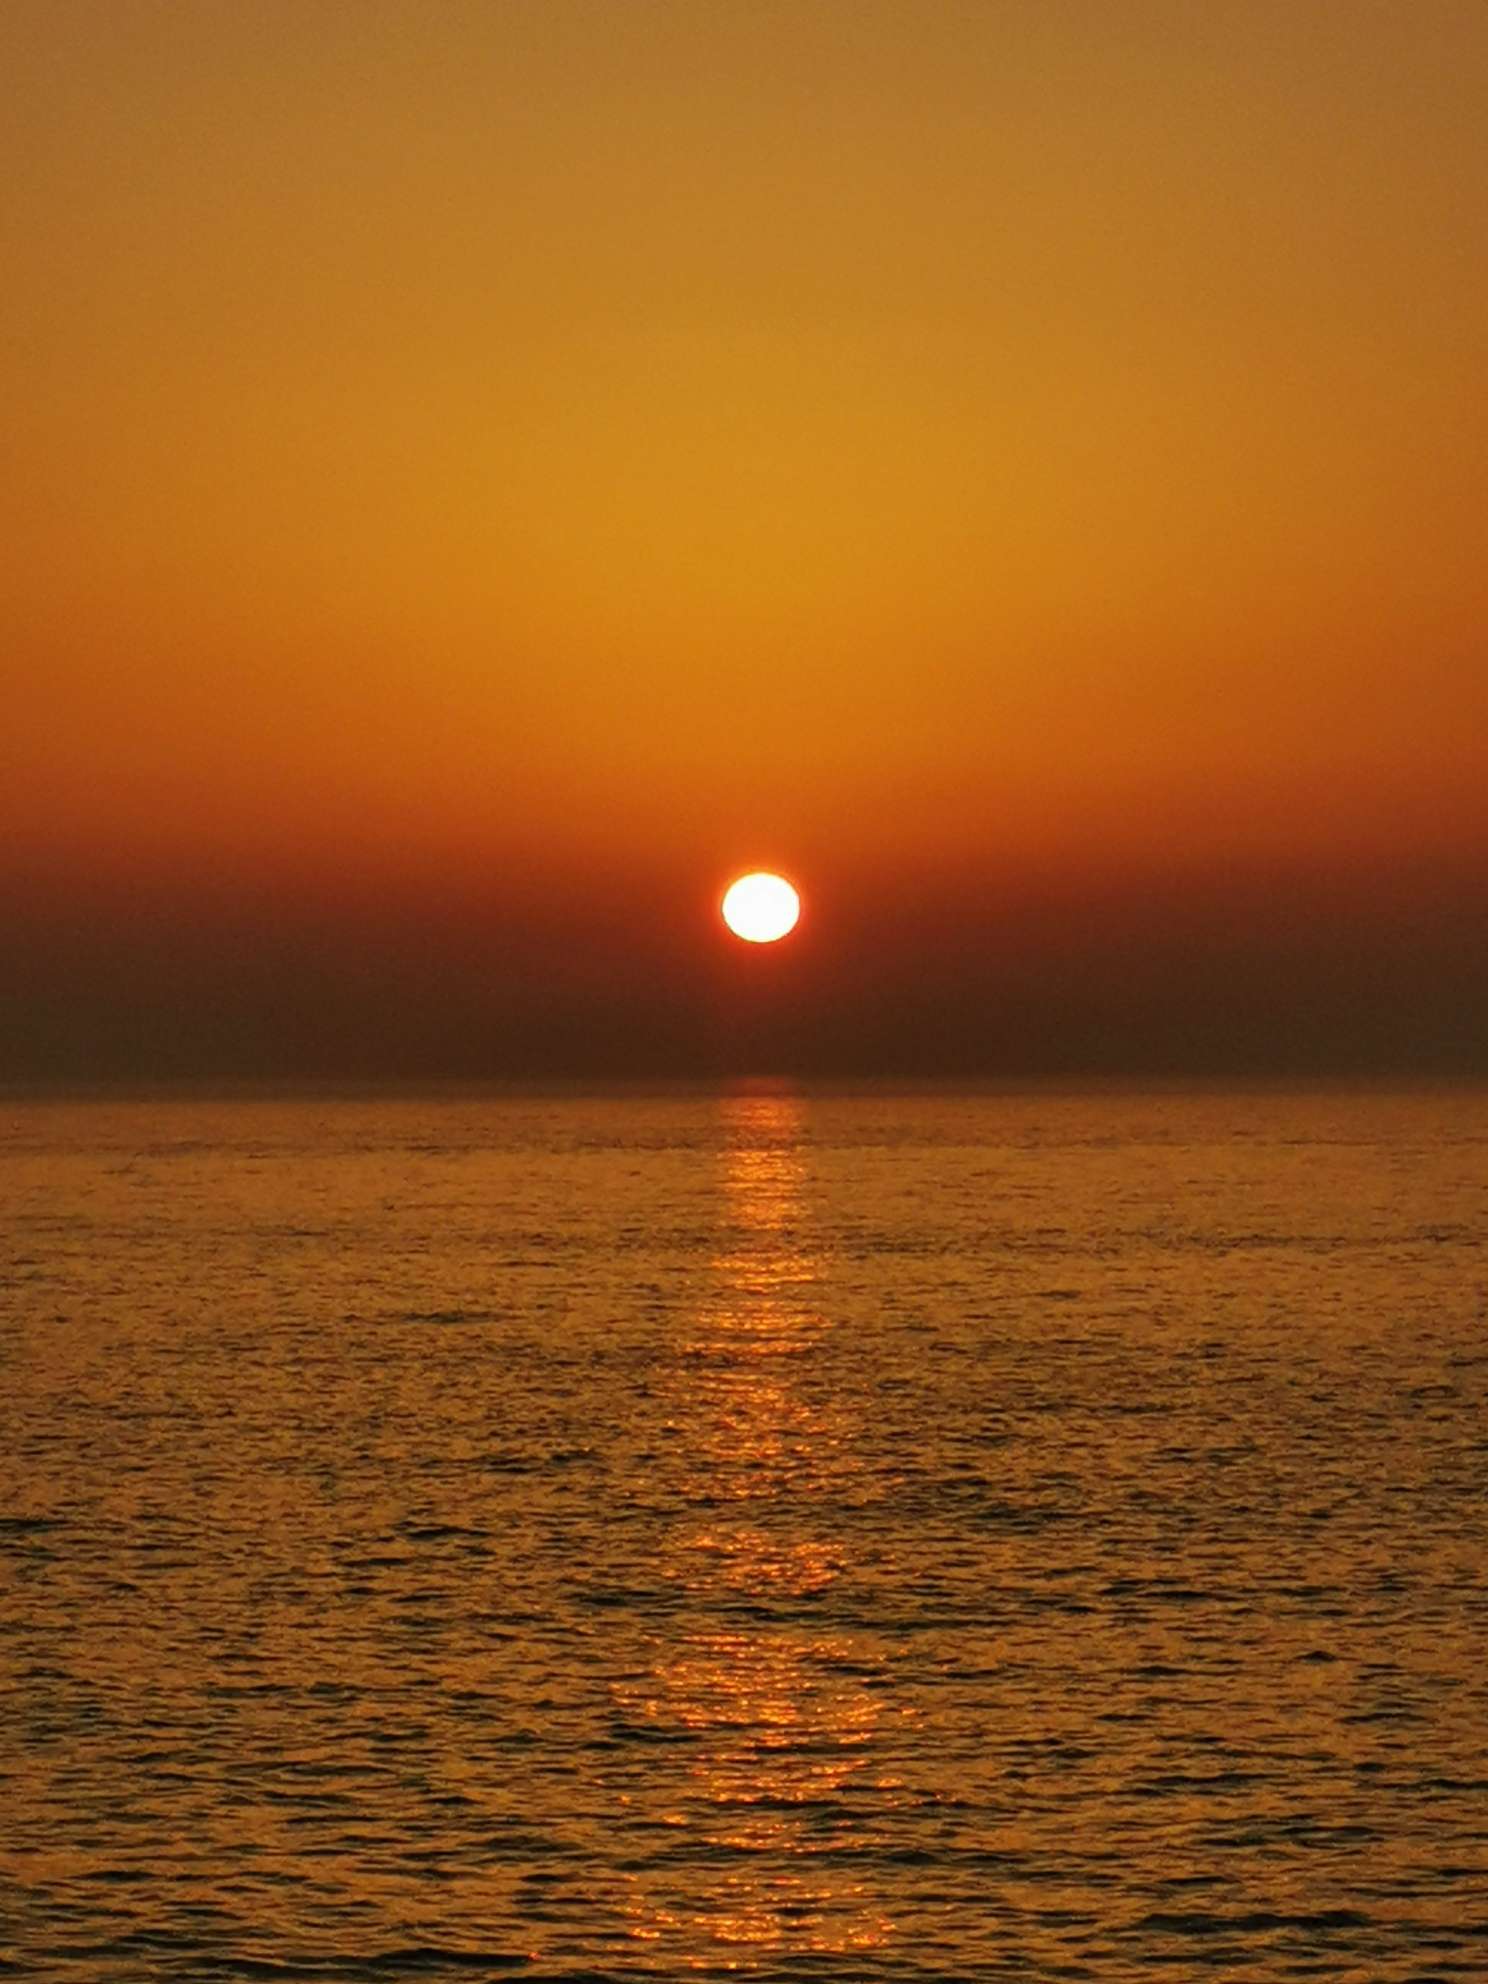 文字原创:石头 图片摄影:山东乳山 海上日出光芒四射,太阳的红光,照